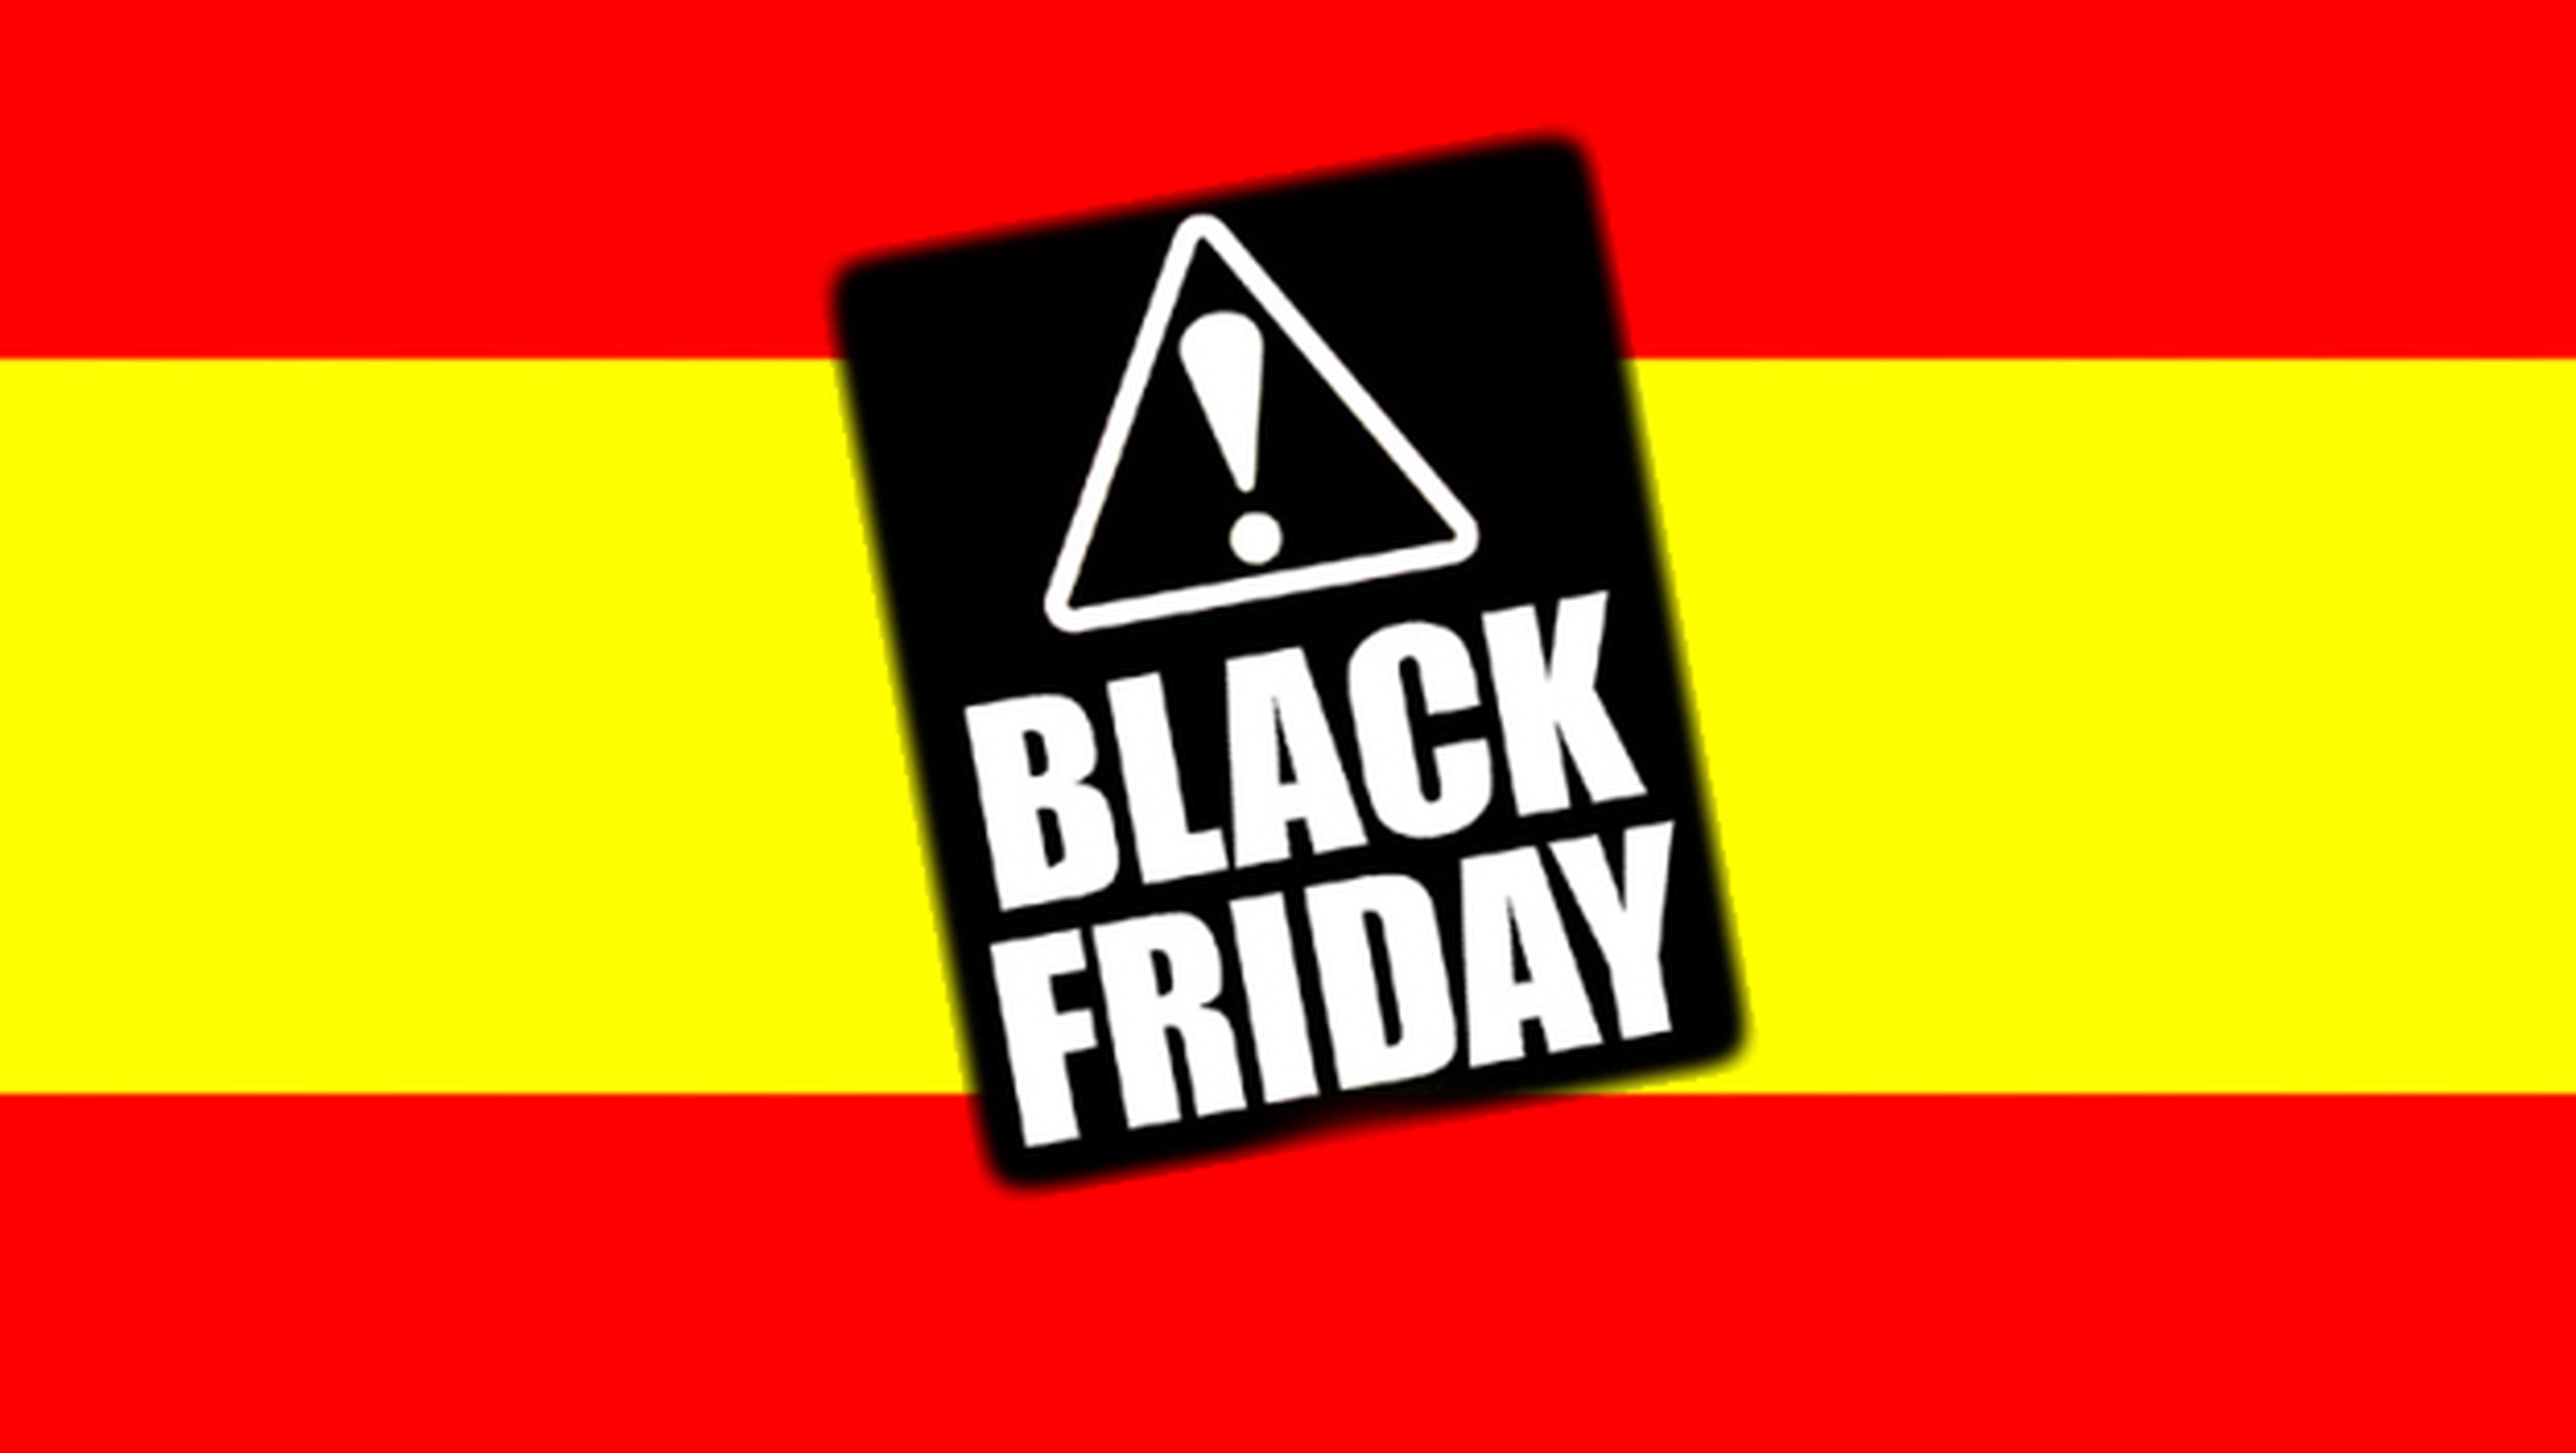 Black Friday tiendas en España 2013